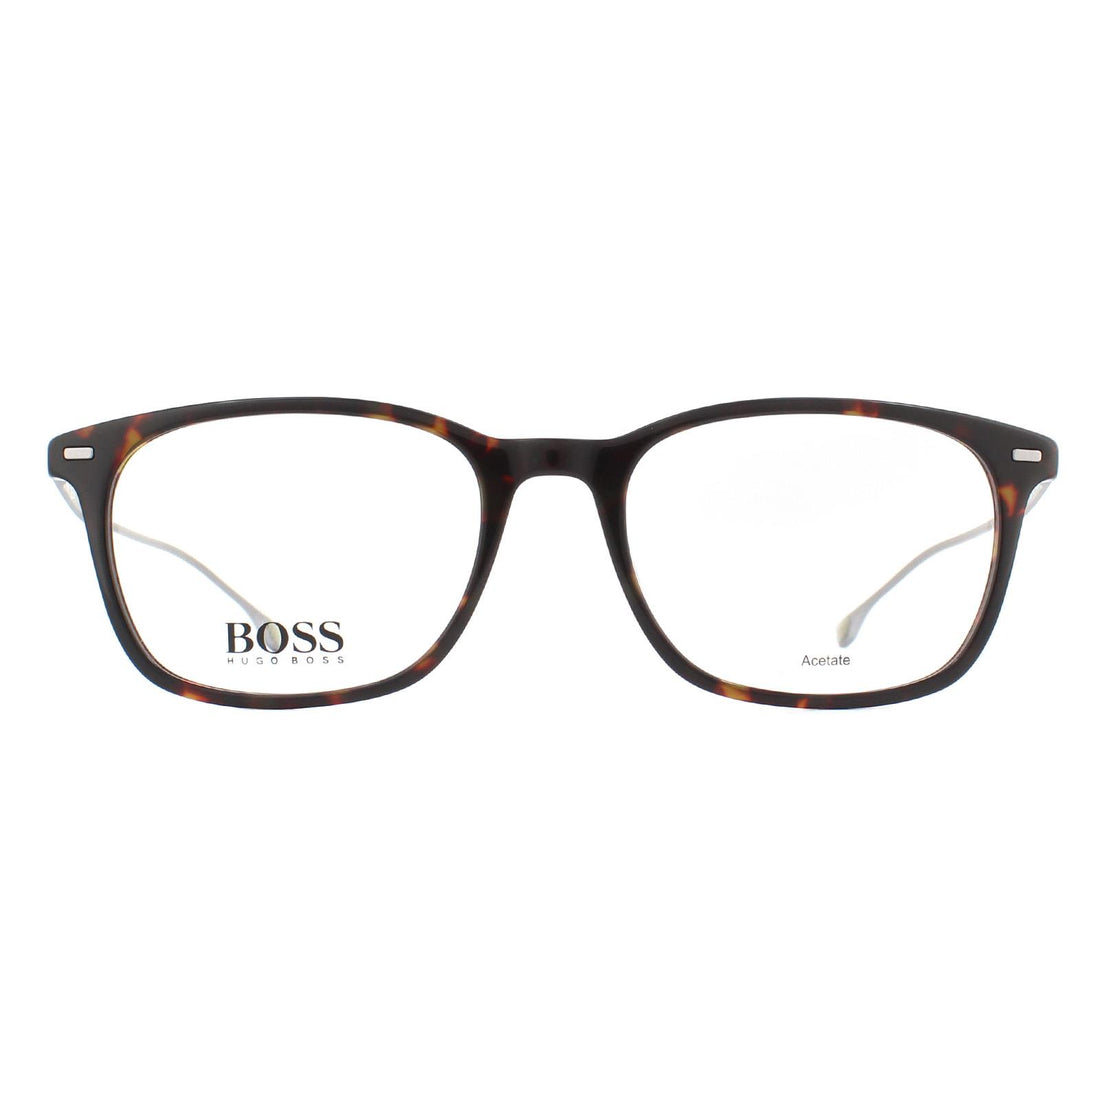 Hugo Boss BOSS 1015 Glasses Frames Dark Havana